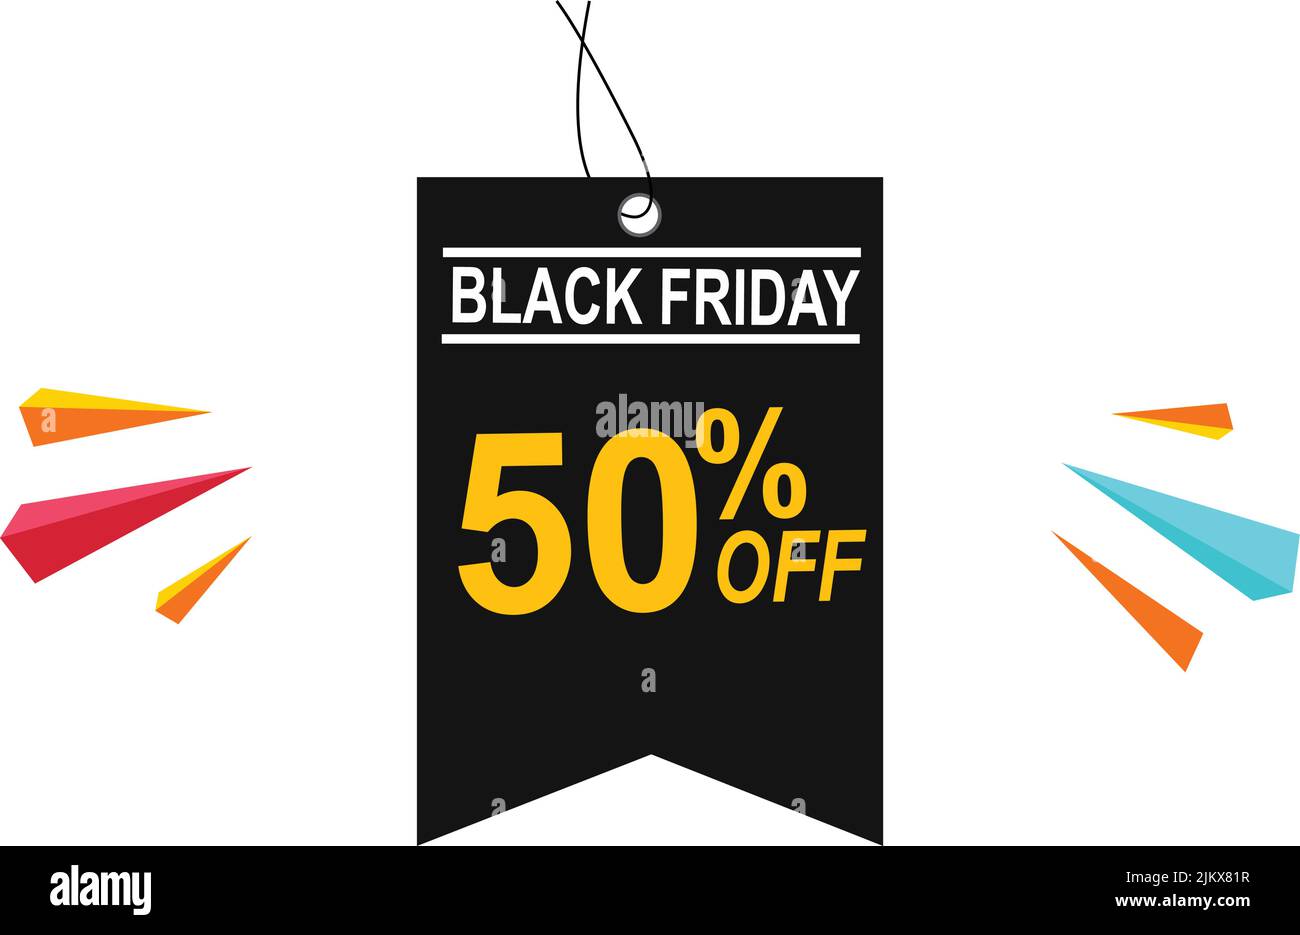 Black Friday Sale Vektor-Design Black Friday Rabatt-Coupons ab Verkaufsangebot Poster Banner Etiketten Aufkleber für Marketing und Werbung Stock Vektor